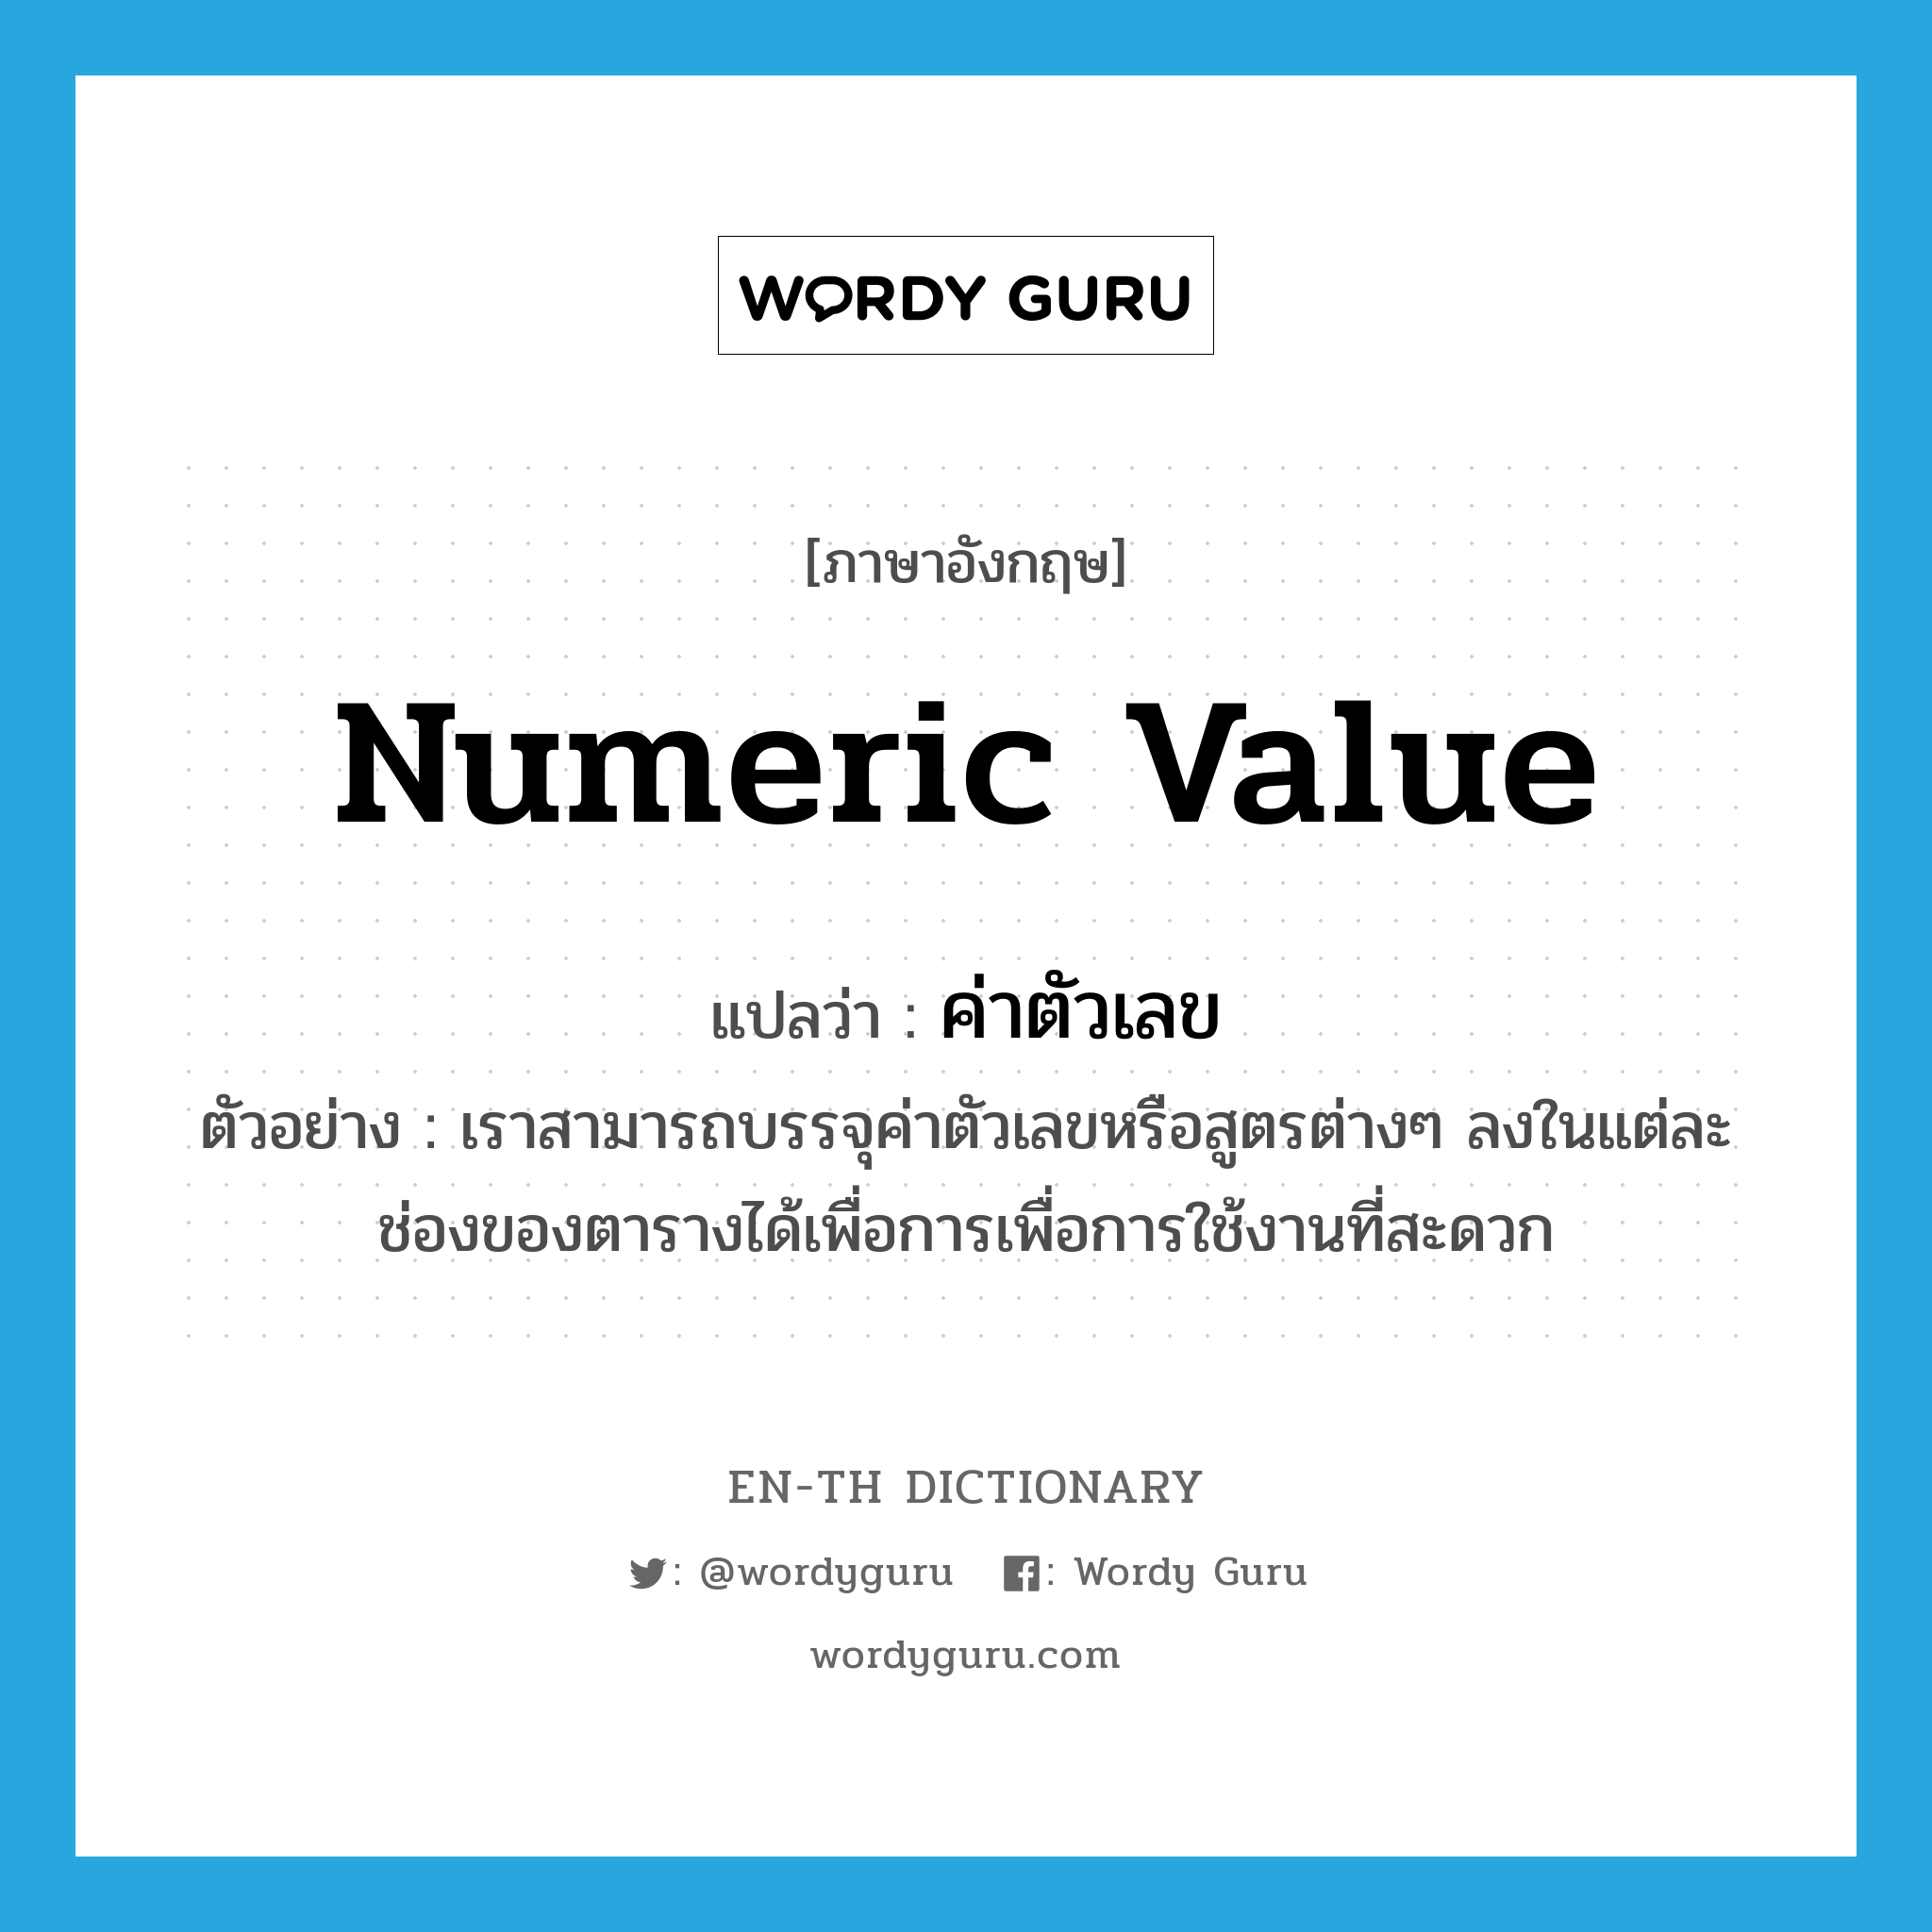 numeric value แปลว่า?, คำศัพท์ภาษาอังกฤษ numeric value แปลว่า ค่าตัวเลข ประเภท N ตัวอย่าง เราสามารถบรรจุค่าตัวเลขหรือสูตรต่างๆ ลงในแต่ละช่องของตารางได้เพื่อการเพื่อการใช้งานที่สะดวก หมวด N